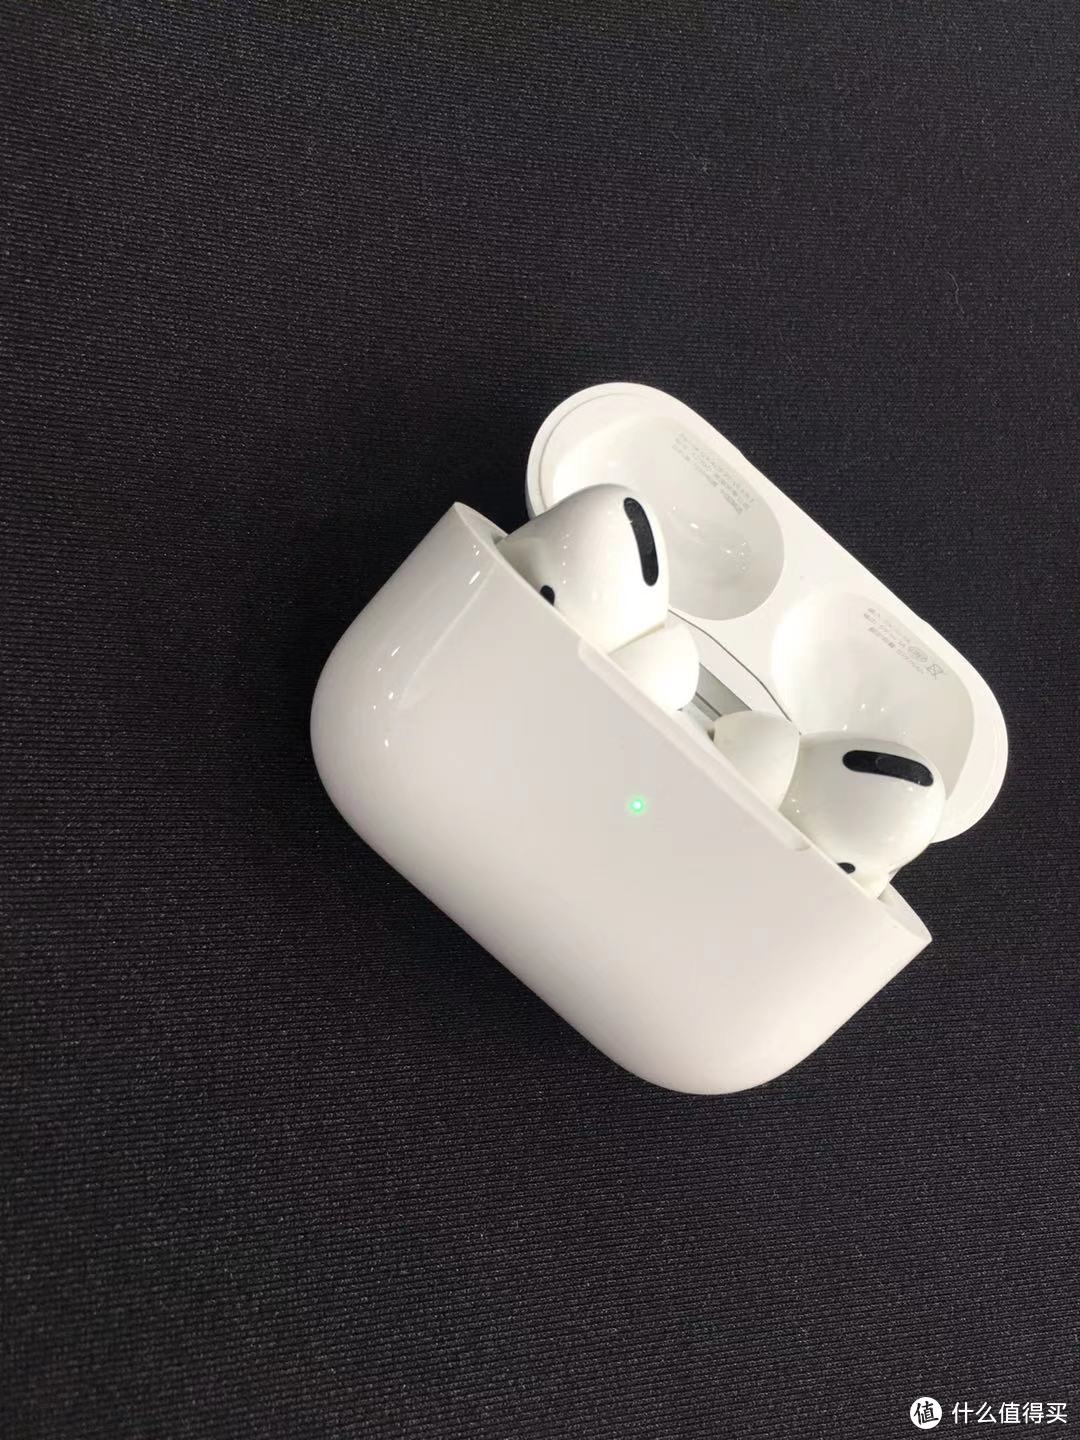 AirPods pro苹果3代主动降噪真无线蓝牙耳机，沉浸式体验